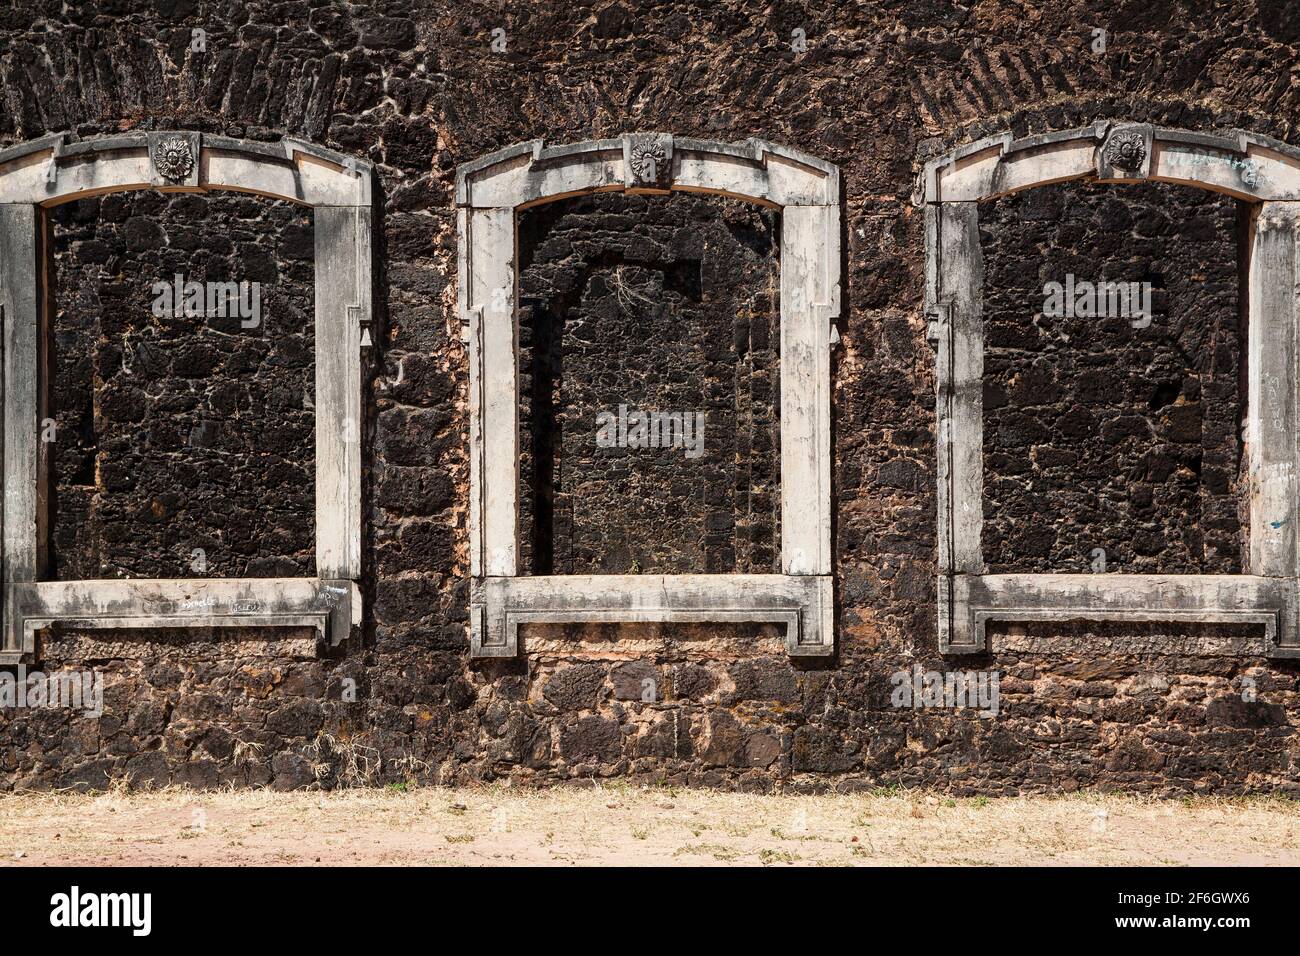 Fenêtres bloquées, ruines à Alcantara, Maranhao, Brésil - la ville a été déclarée par le gouvernement brésilien comme un patrimoine historique national en raison des ruines de la période coloniale et impériale. Banque D'Images